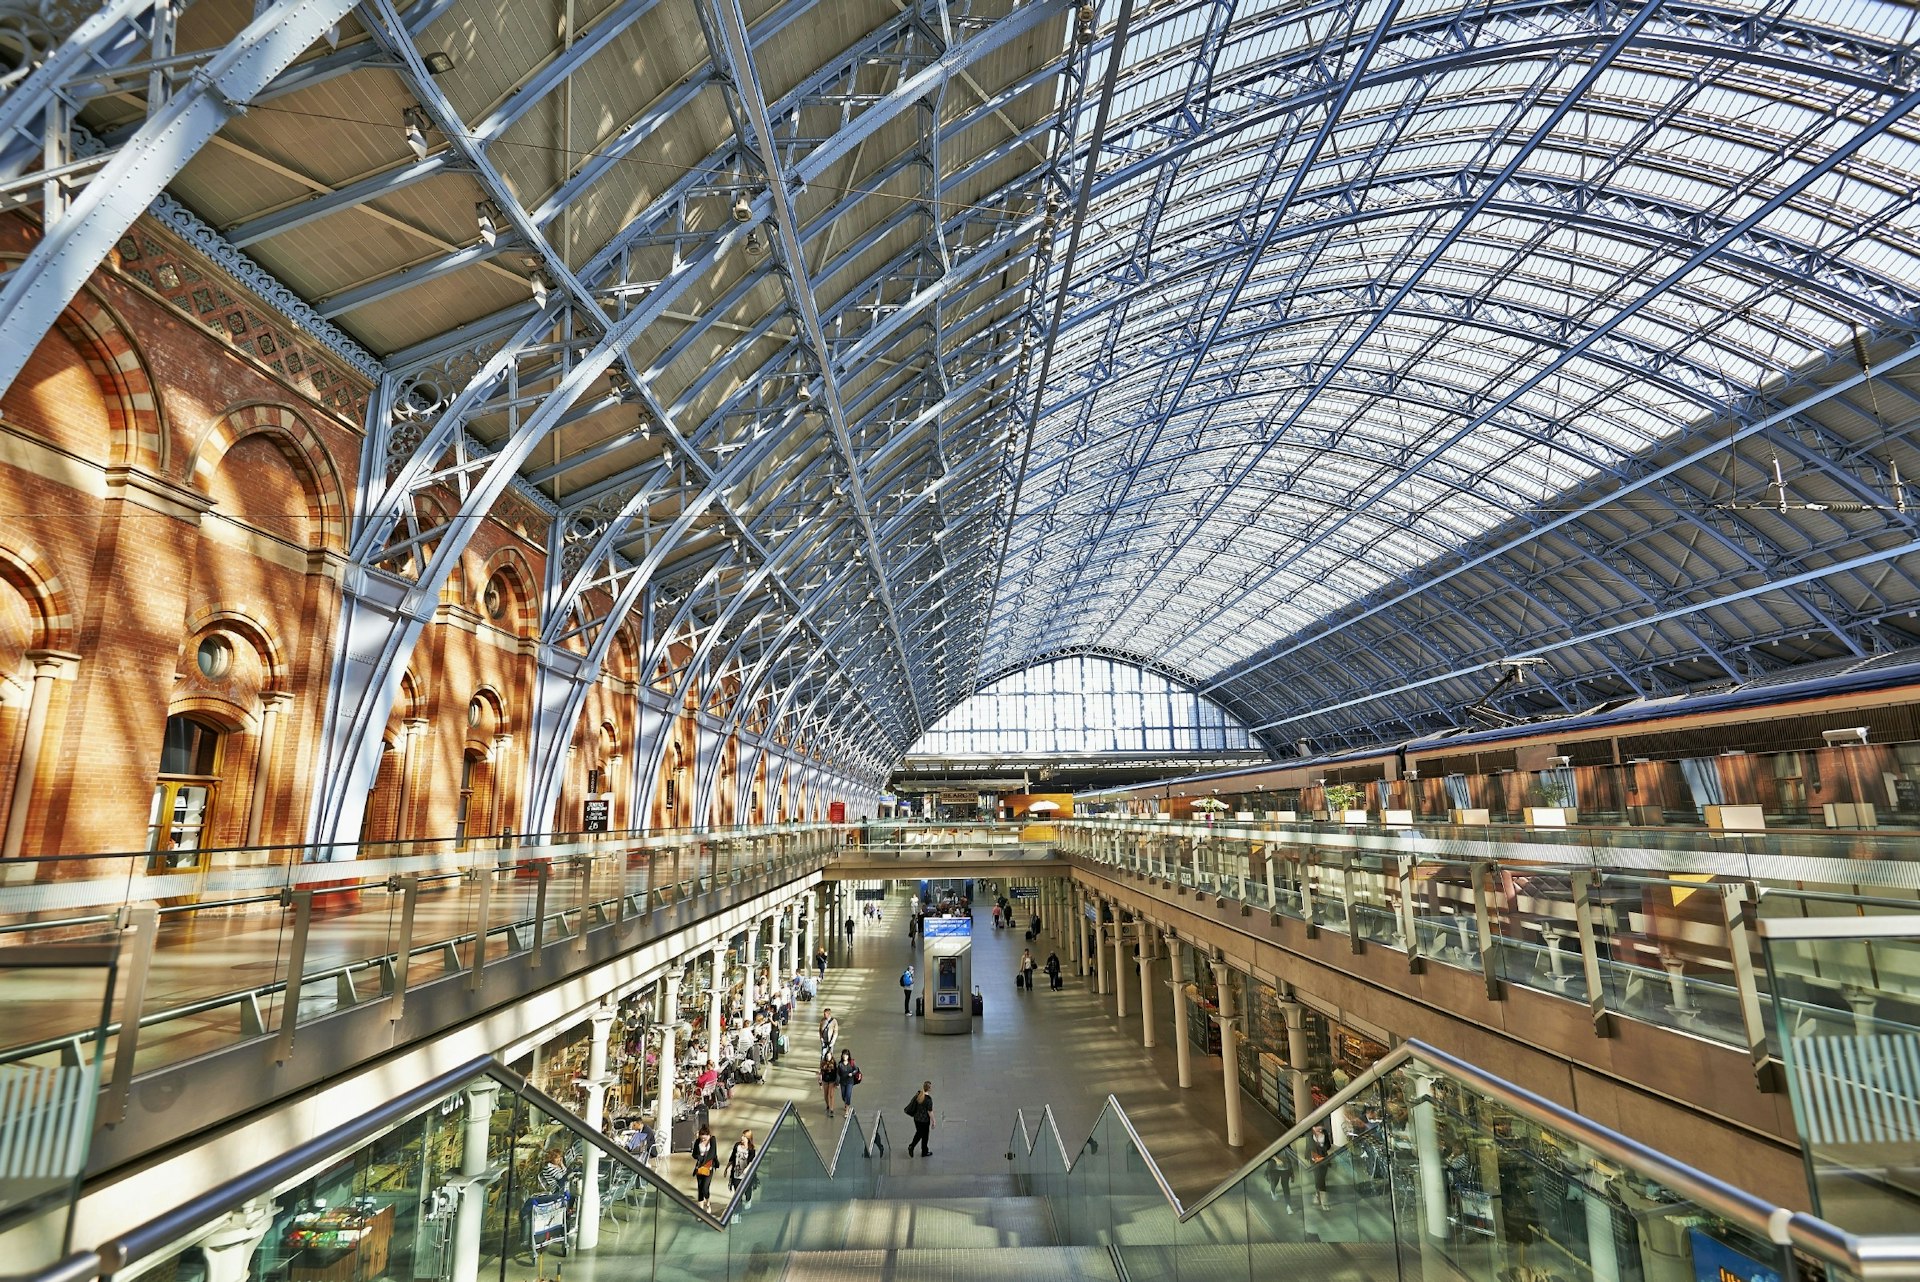 Inside St Pancras International train station in Kings Cross.